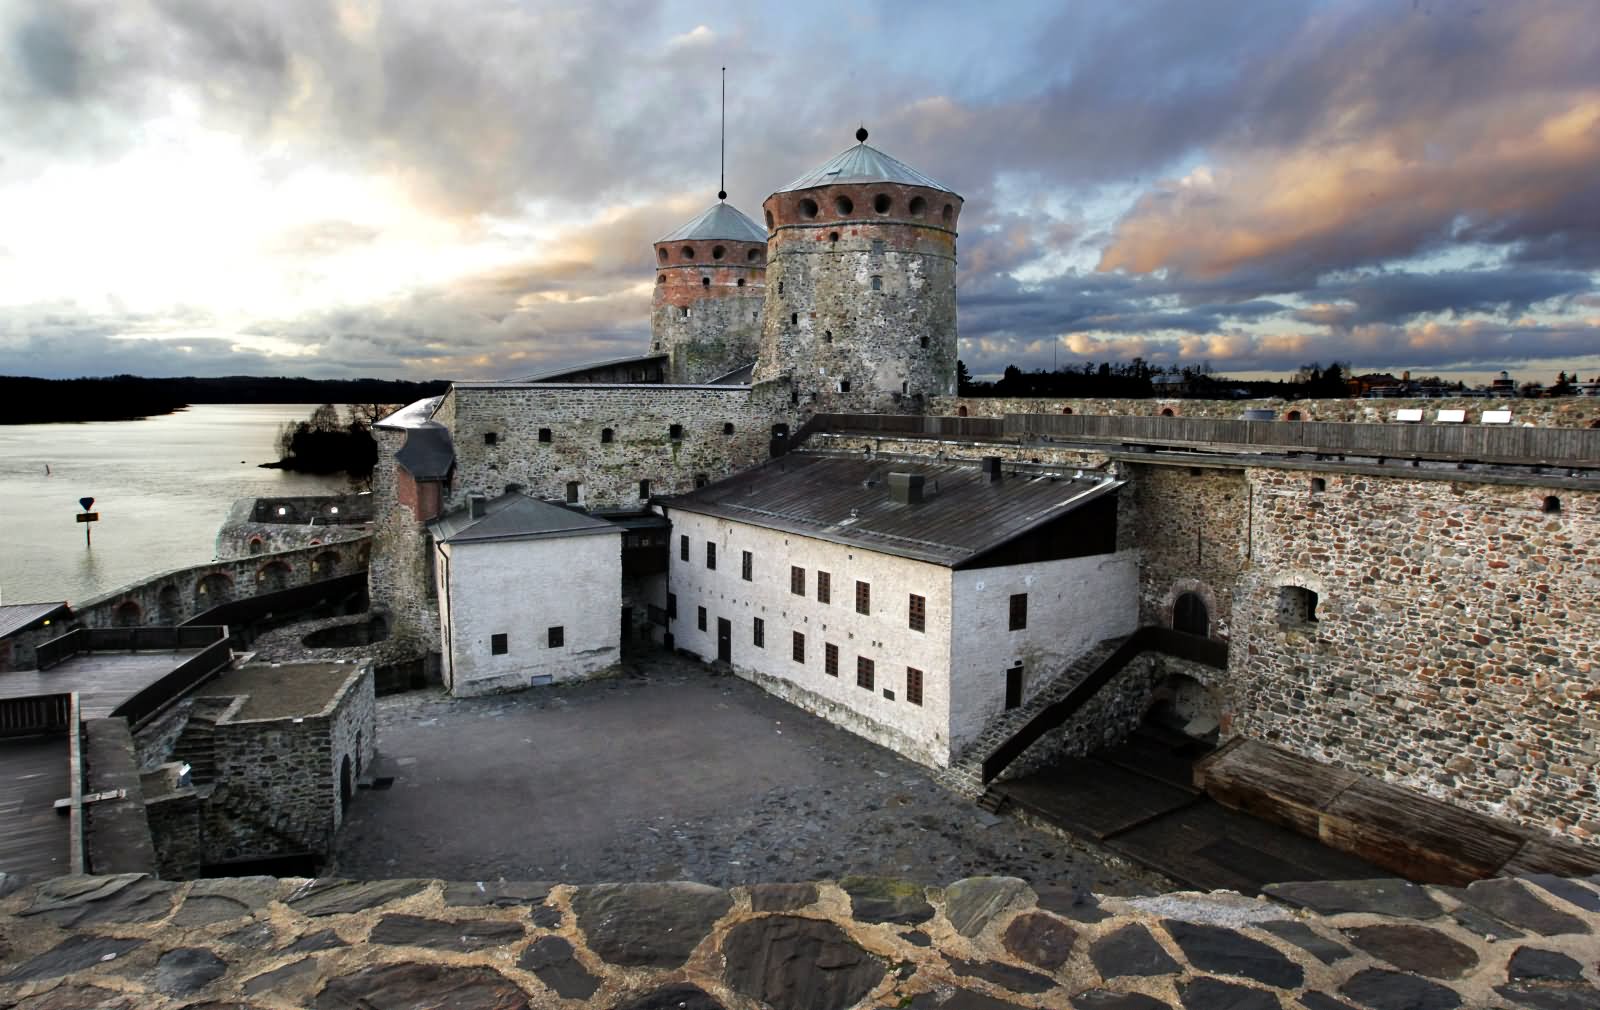 Inside The Olavinlinna Castle In Finland